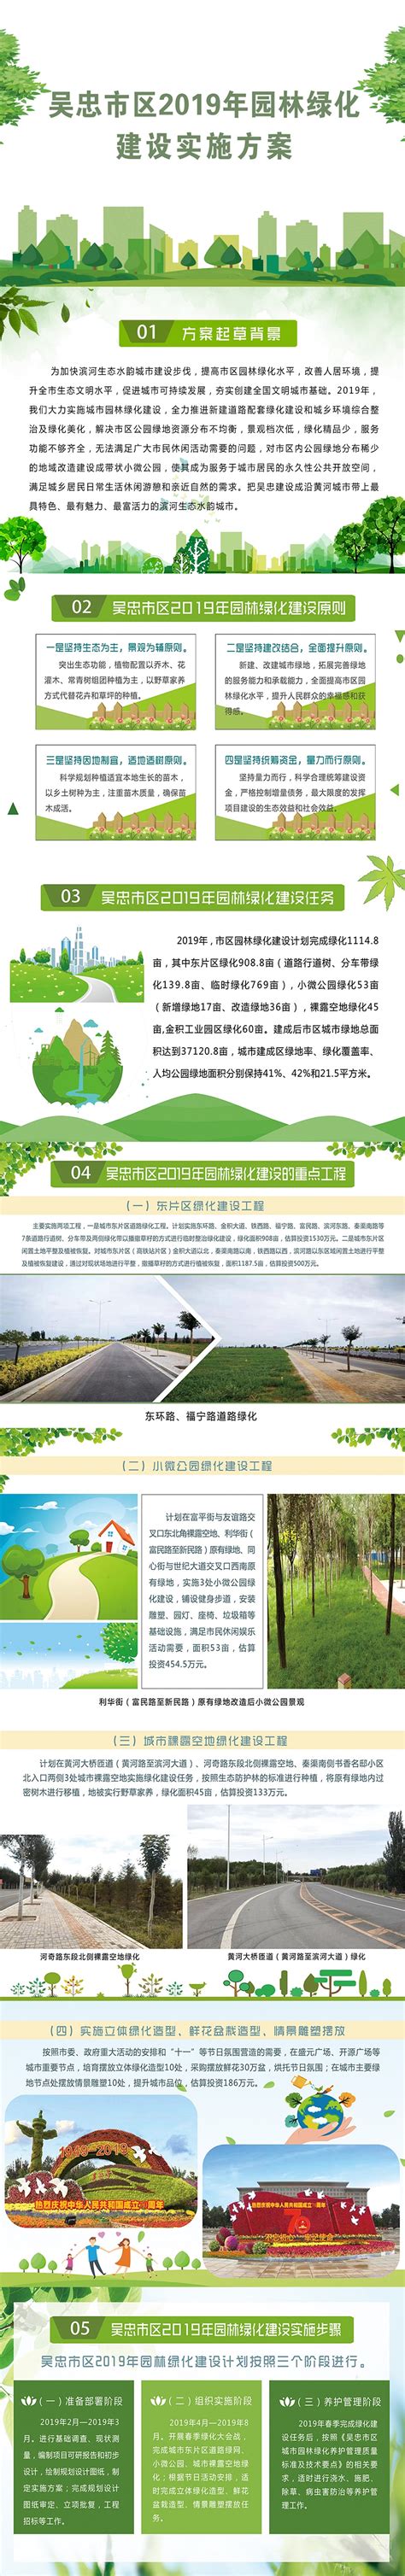 《吴忠市区2019年园林绿化建设实施方案》图解_吴忠市人民政府